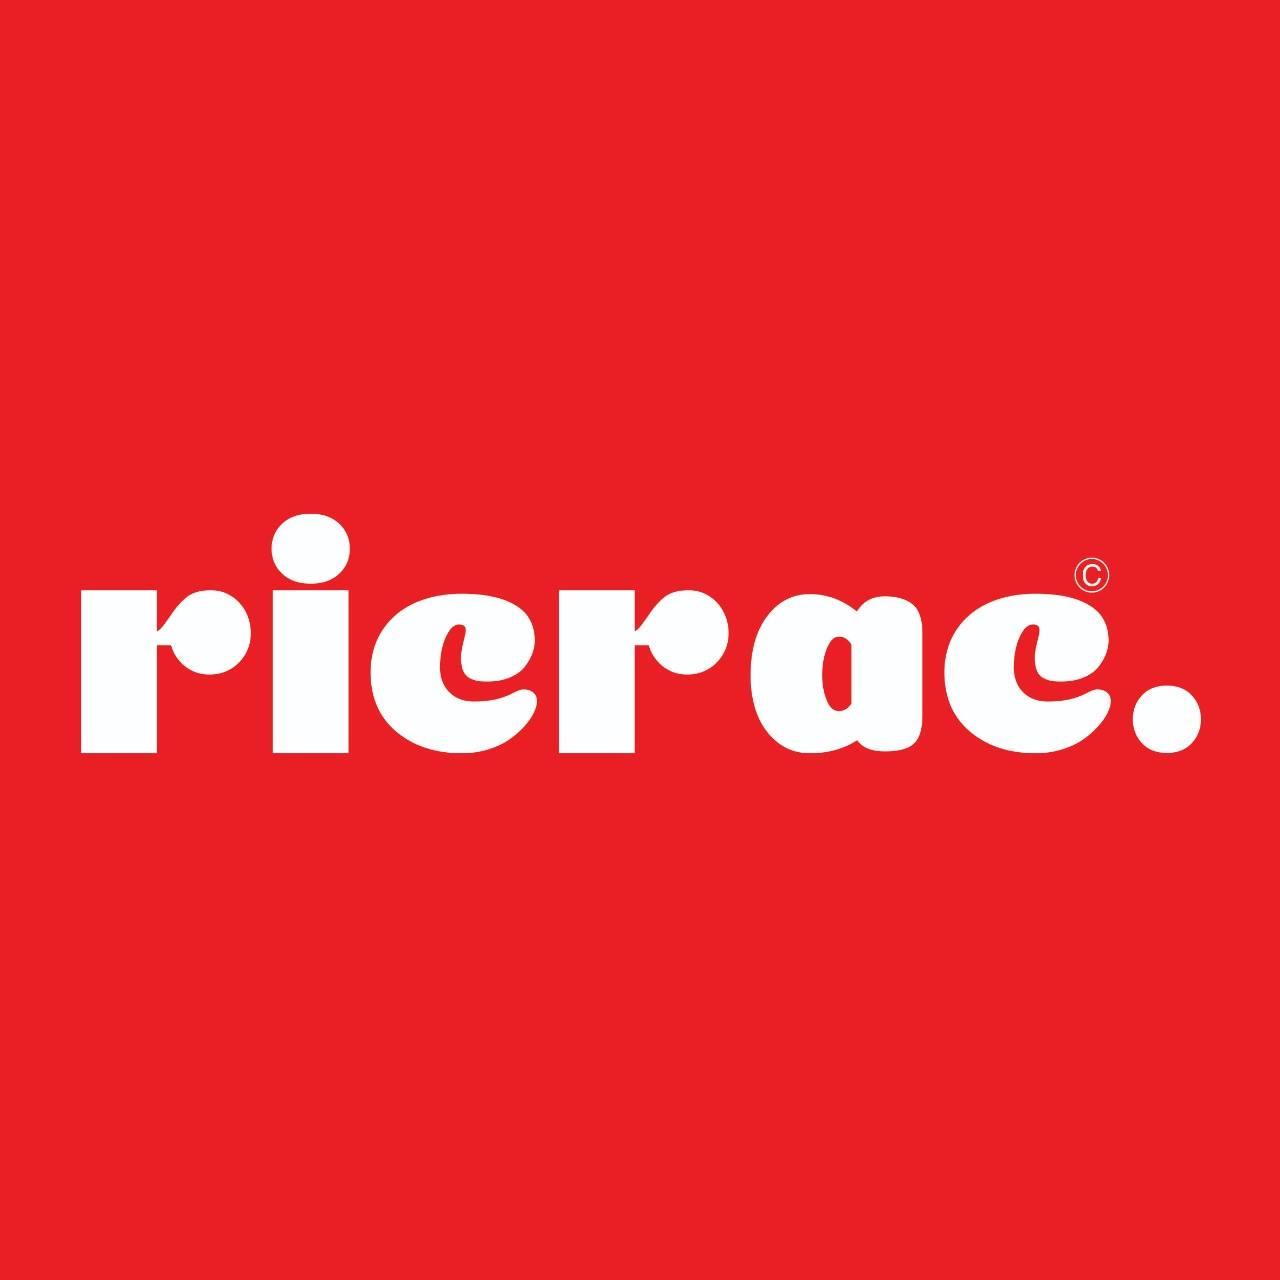 RicRac